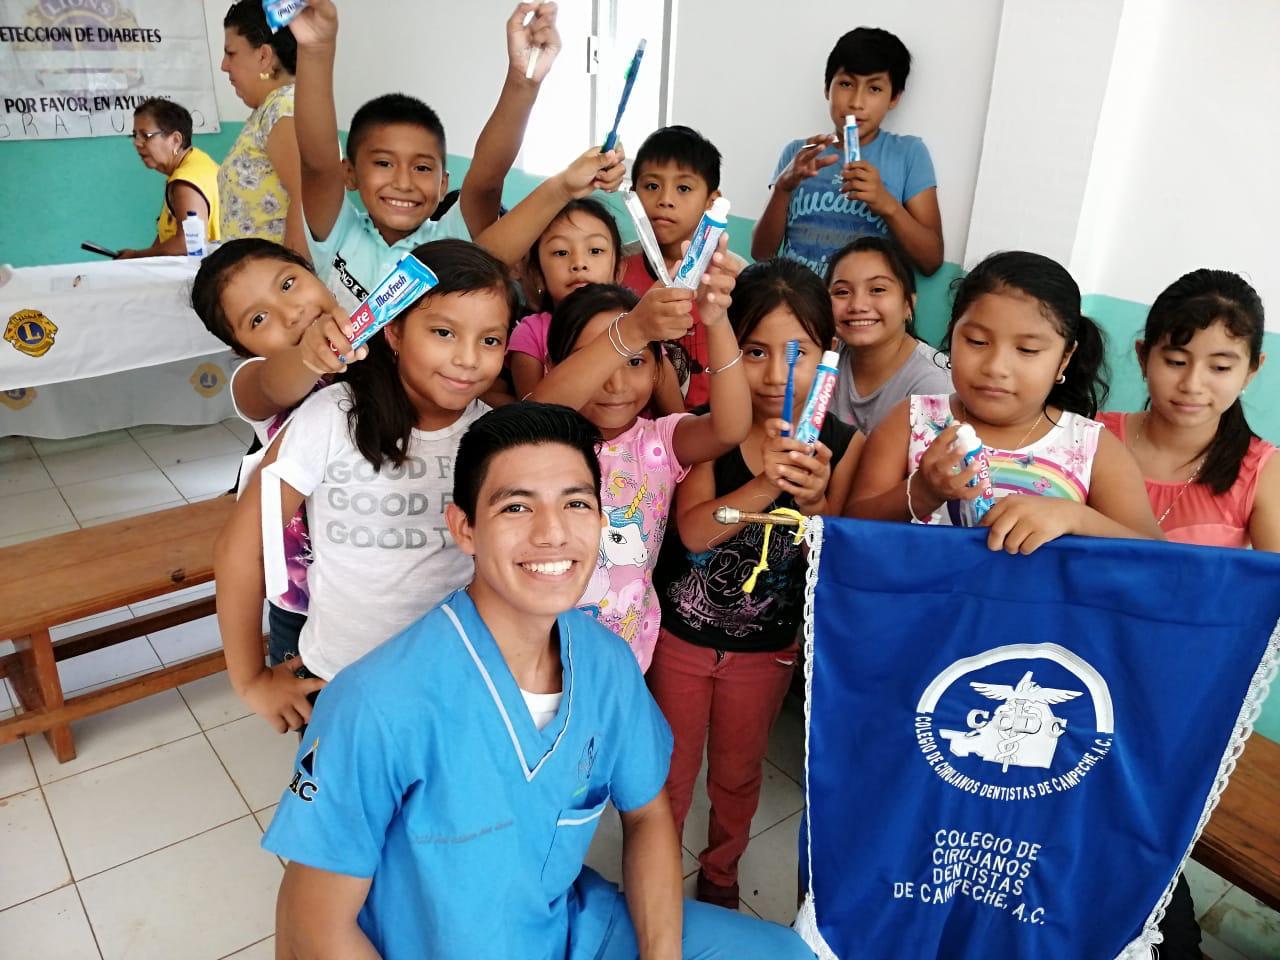 Plática de higiene oral poblado de Bobola, Campeche